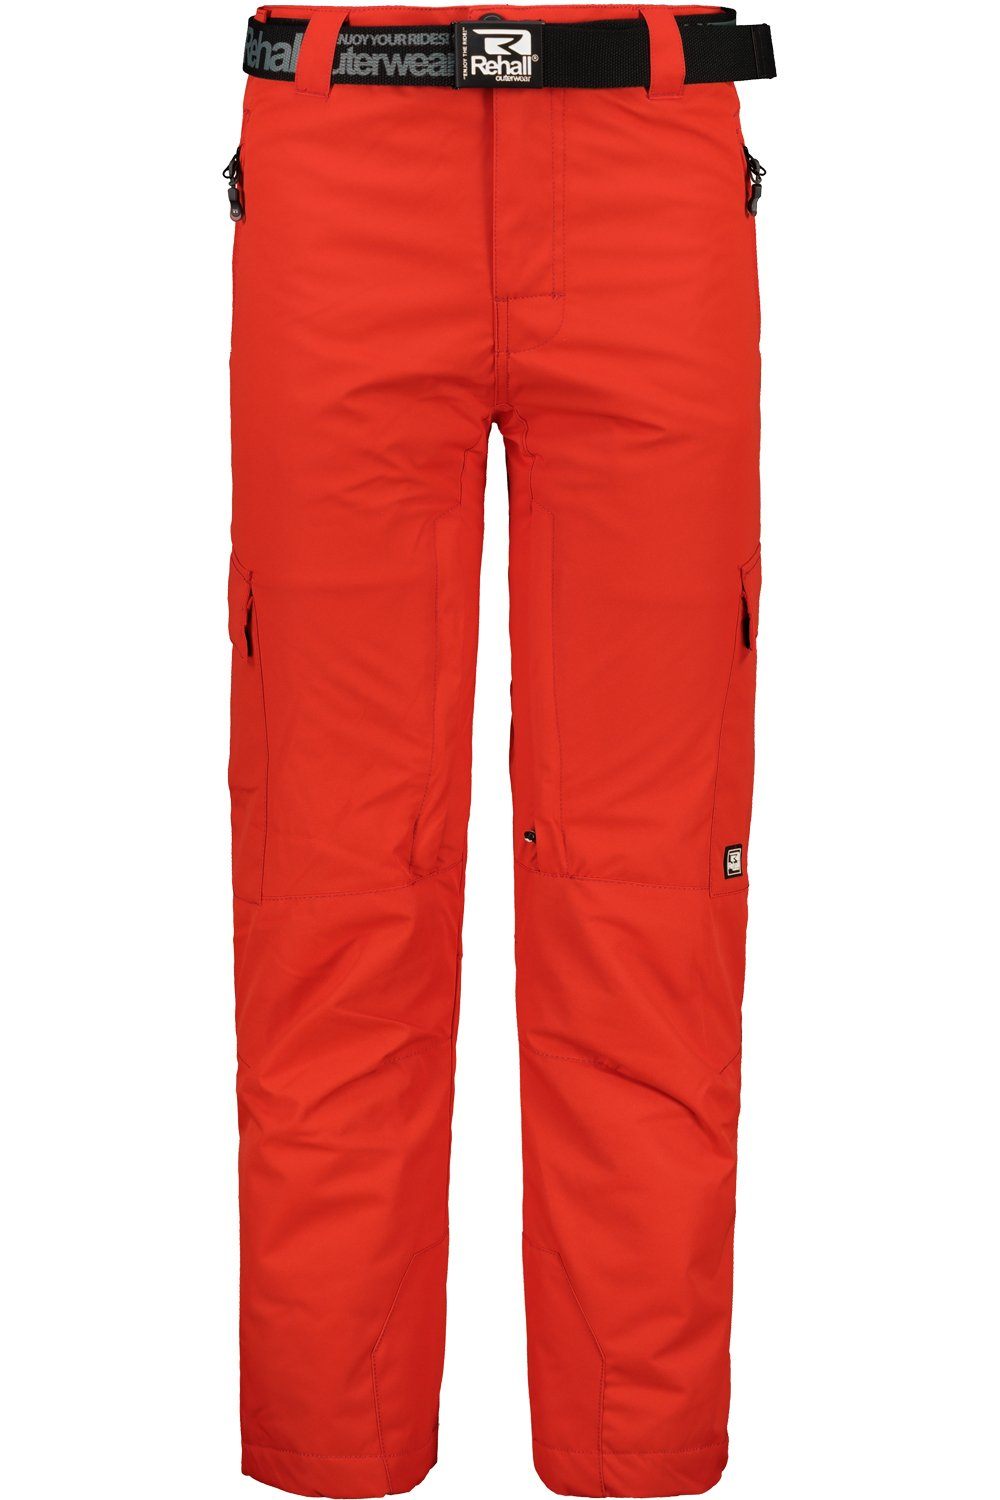 Męskie spodnie narciarskie REHALL DIZZY